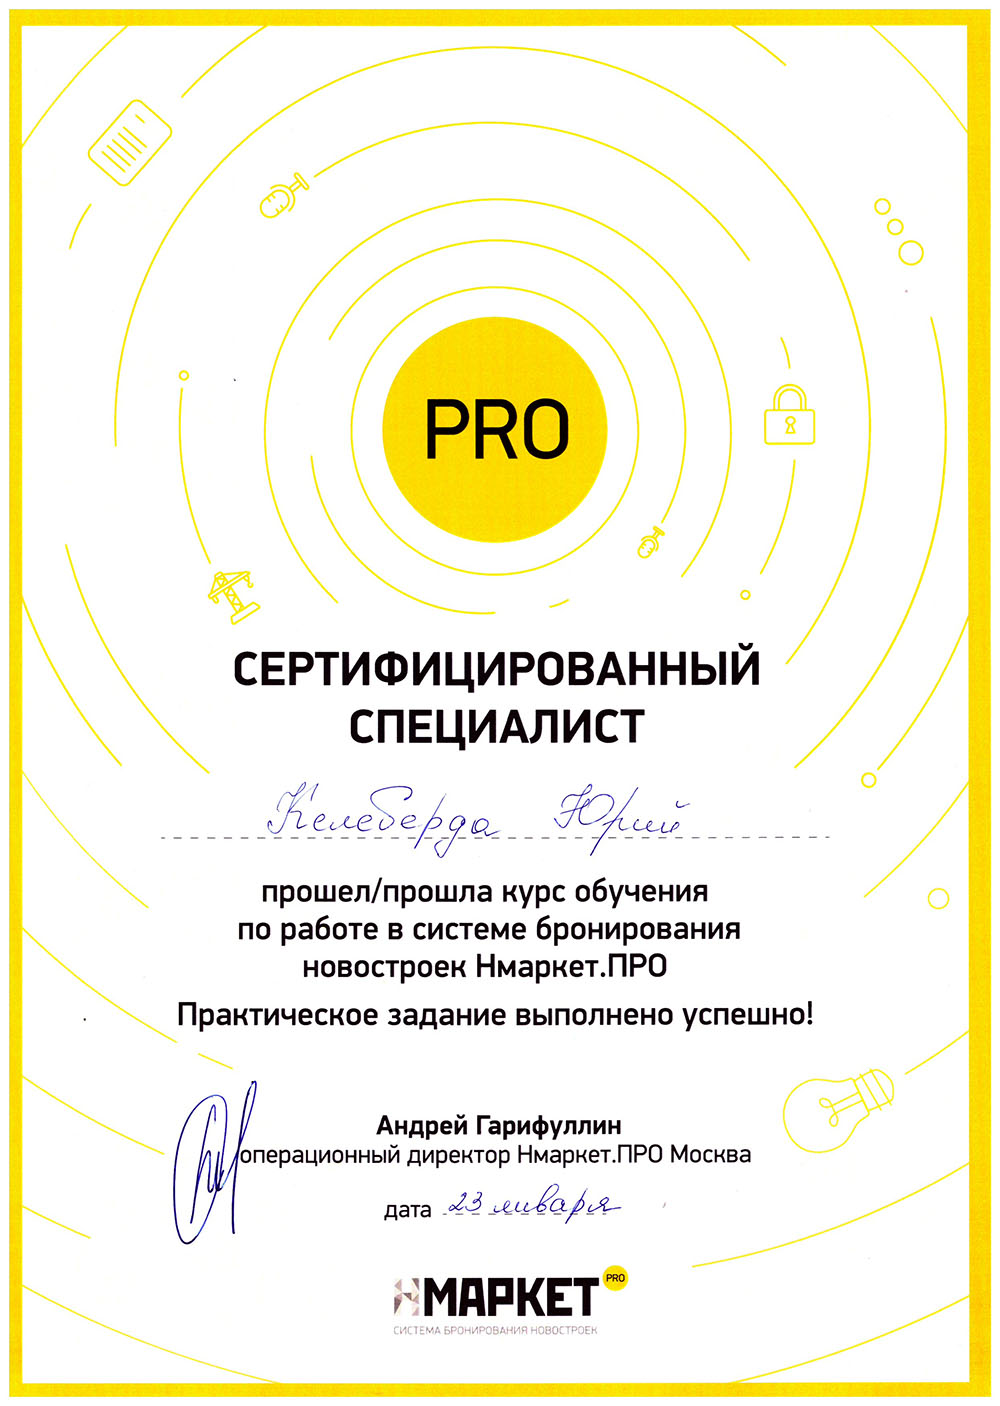 Келеберда Юрий - сертификат